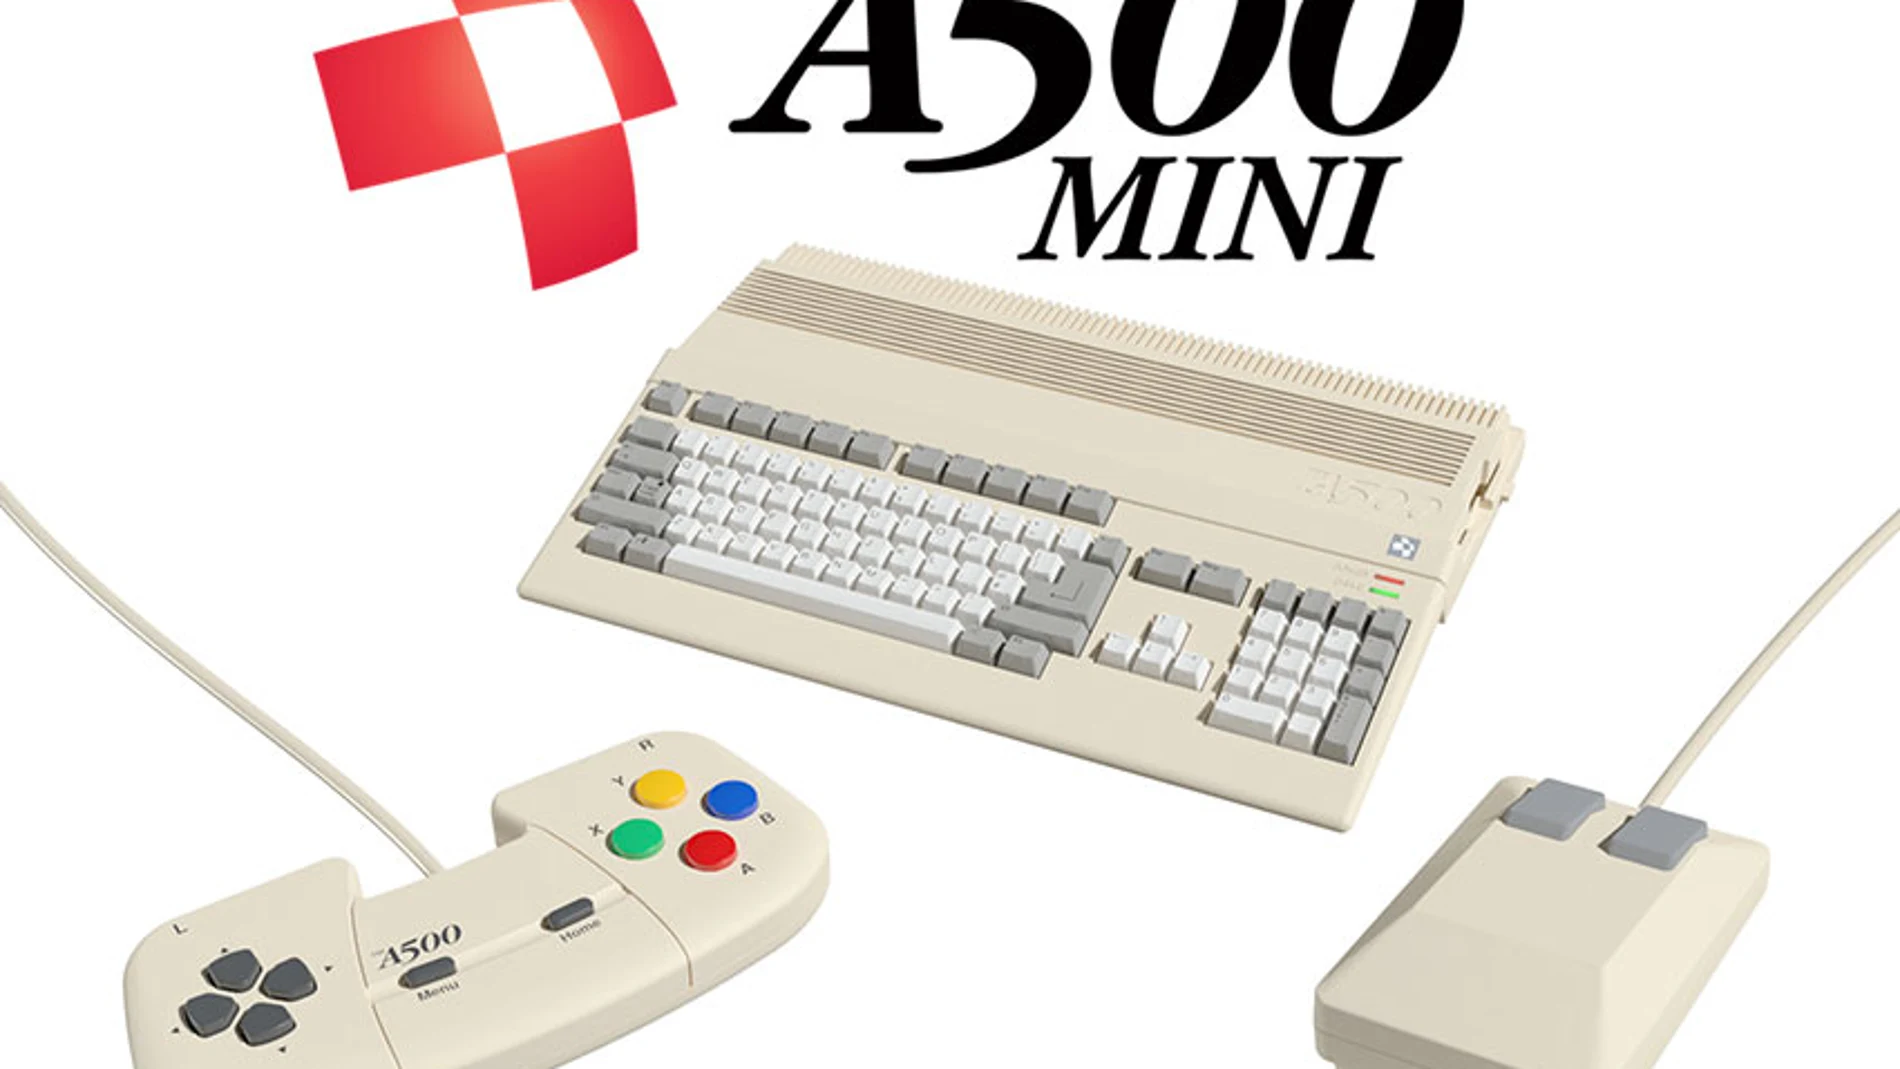 TheA500 Mini: El mítico Commodore Amiga regresa con 25 clásicos de 16 bits